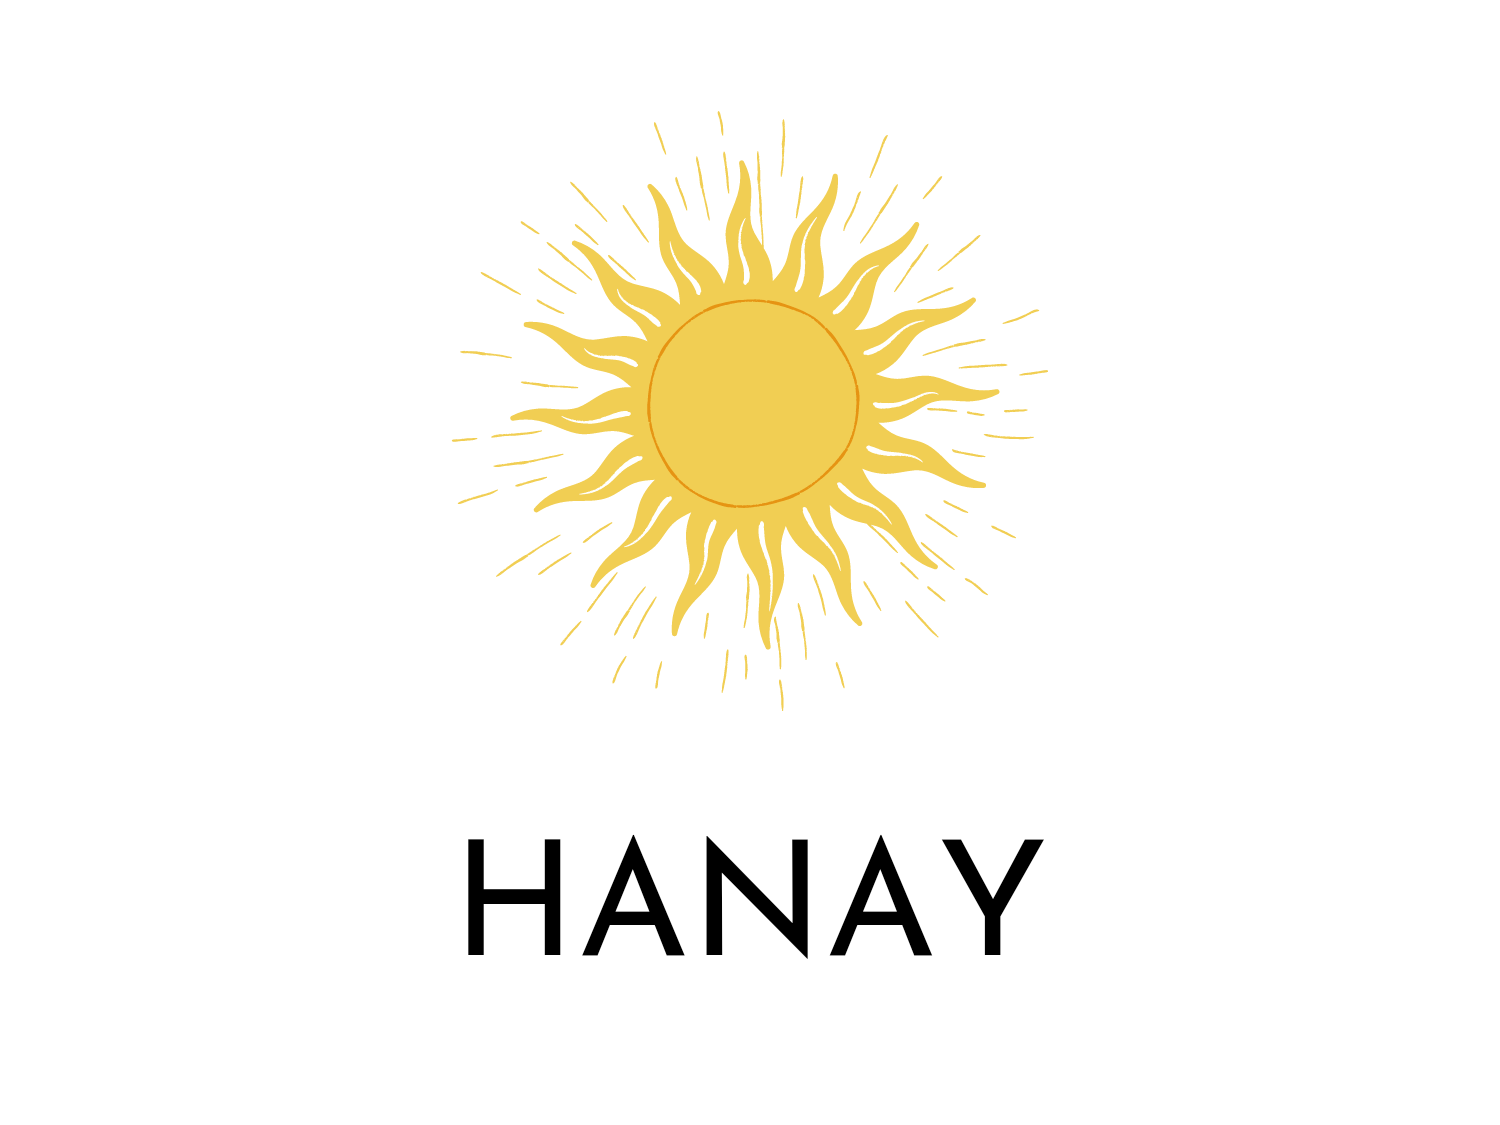 Hanay